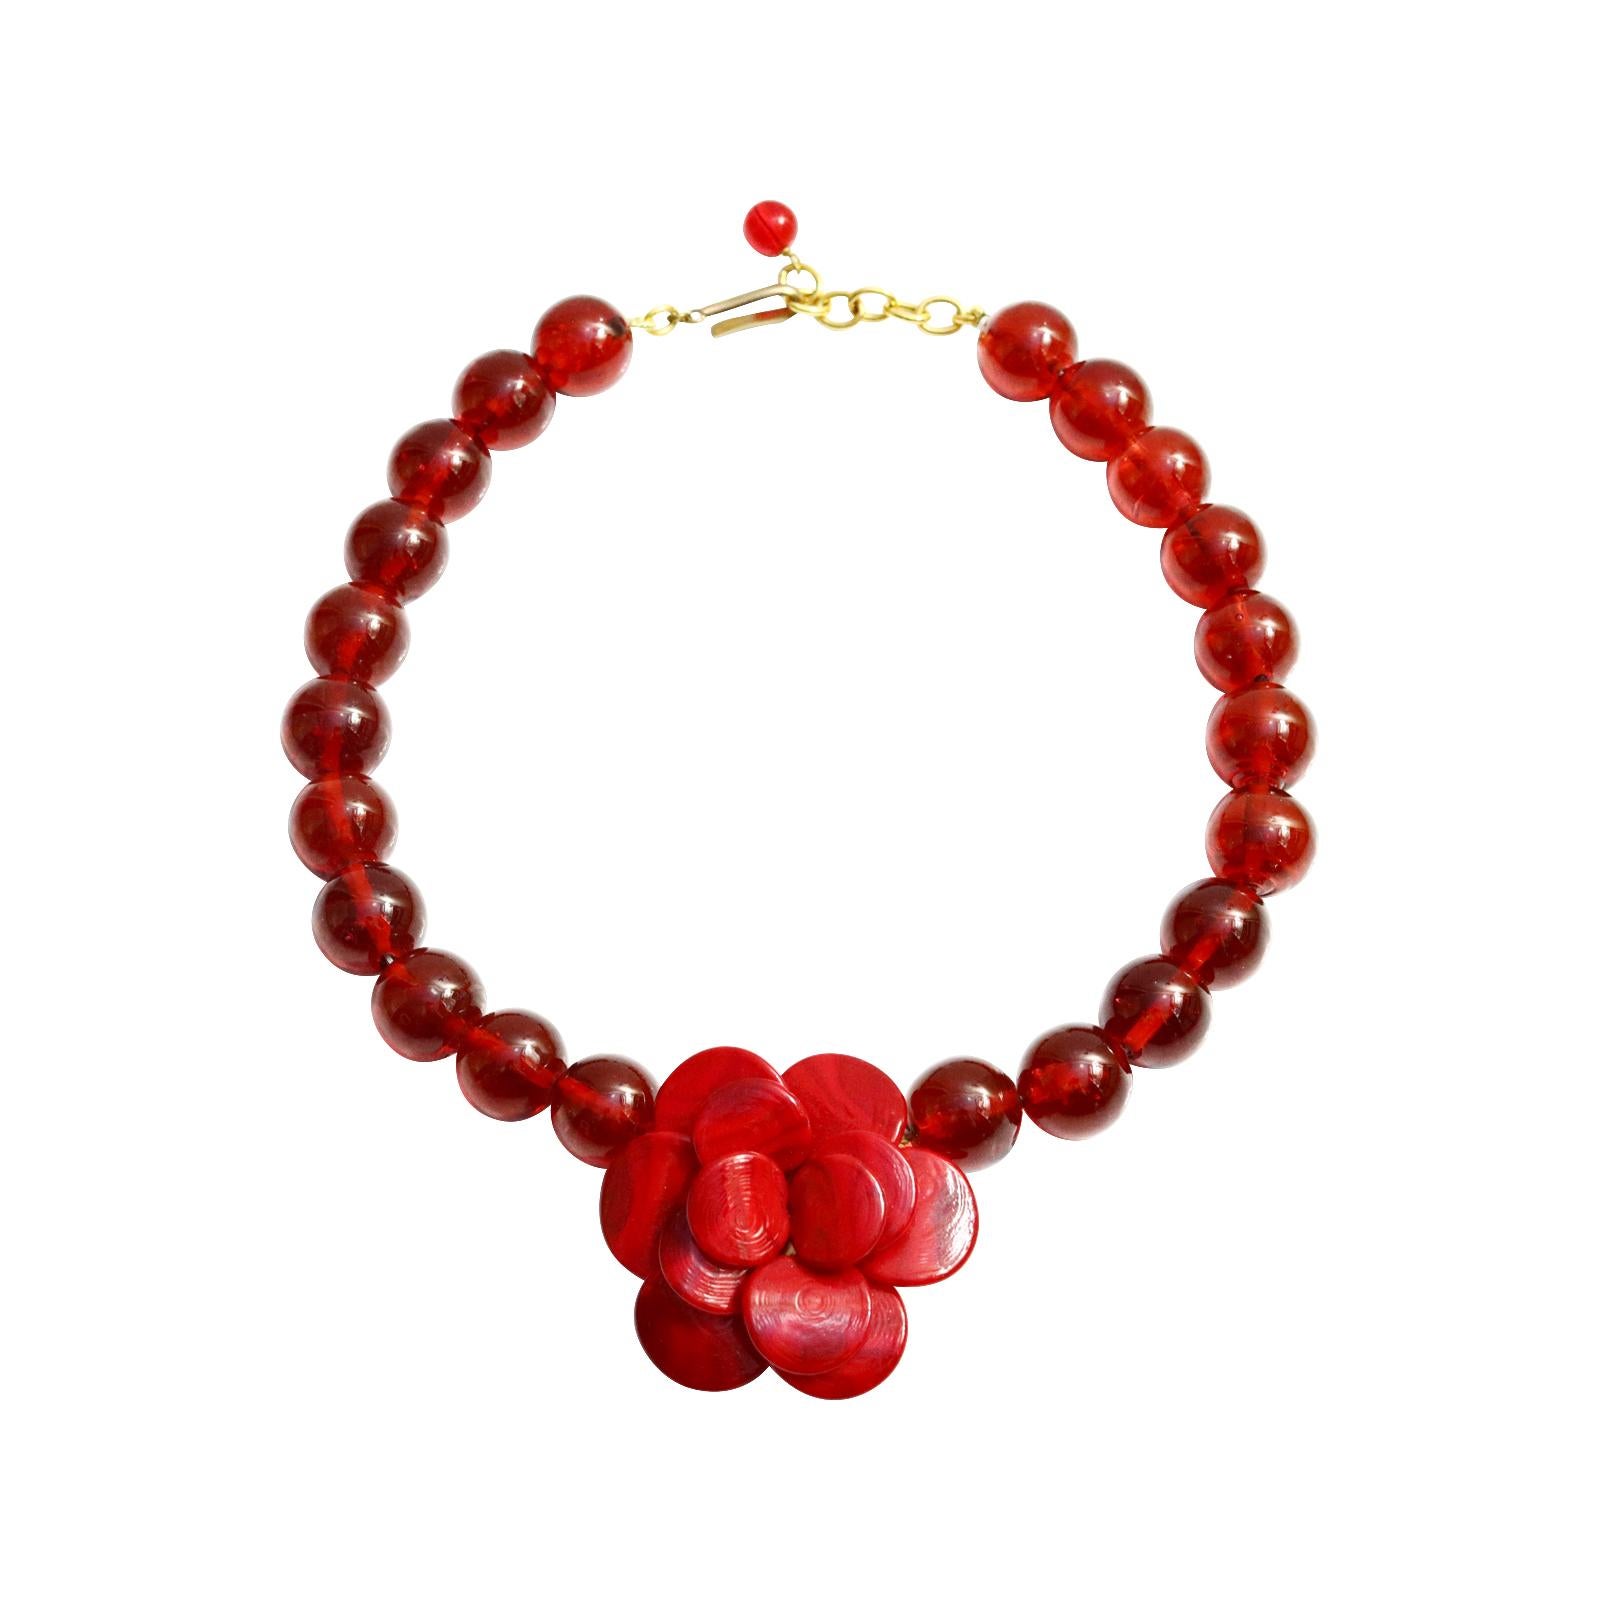 Vintage Gripoix Red MDV Paris Flower Necklace. Ce collier est tellement spectaculaire.  La fleur ressemble au Chanel Camelia. Cela respire la classe.  Il y a quelque chose de très spécial dans ce produit une fois qu'il est allumé.  Il n'a peut-être